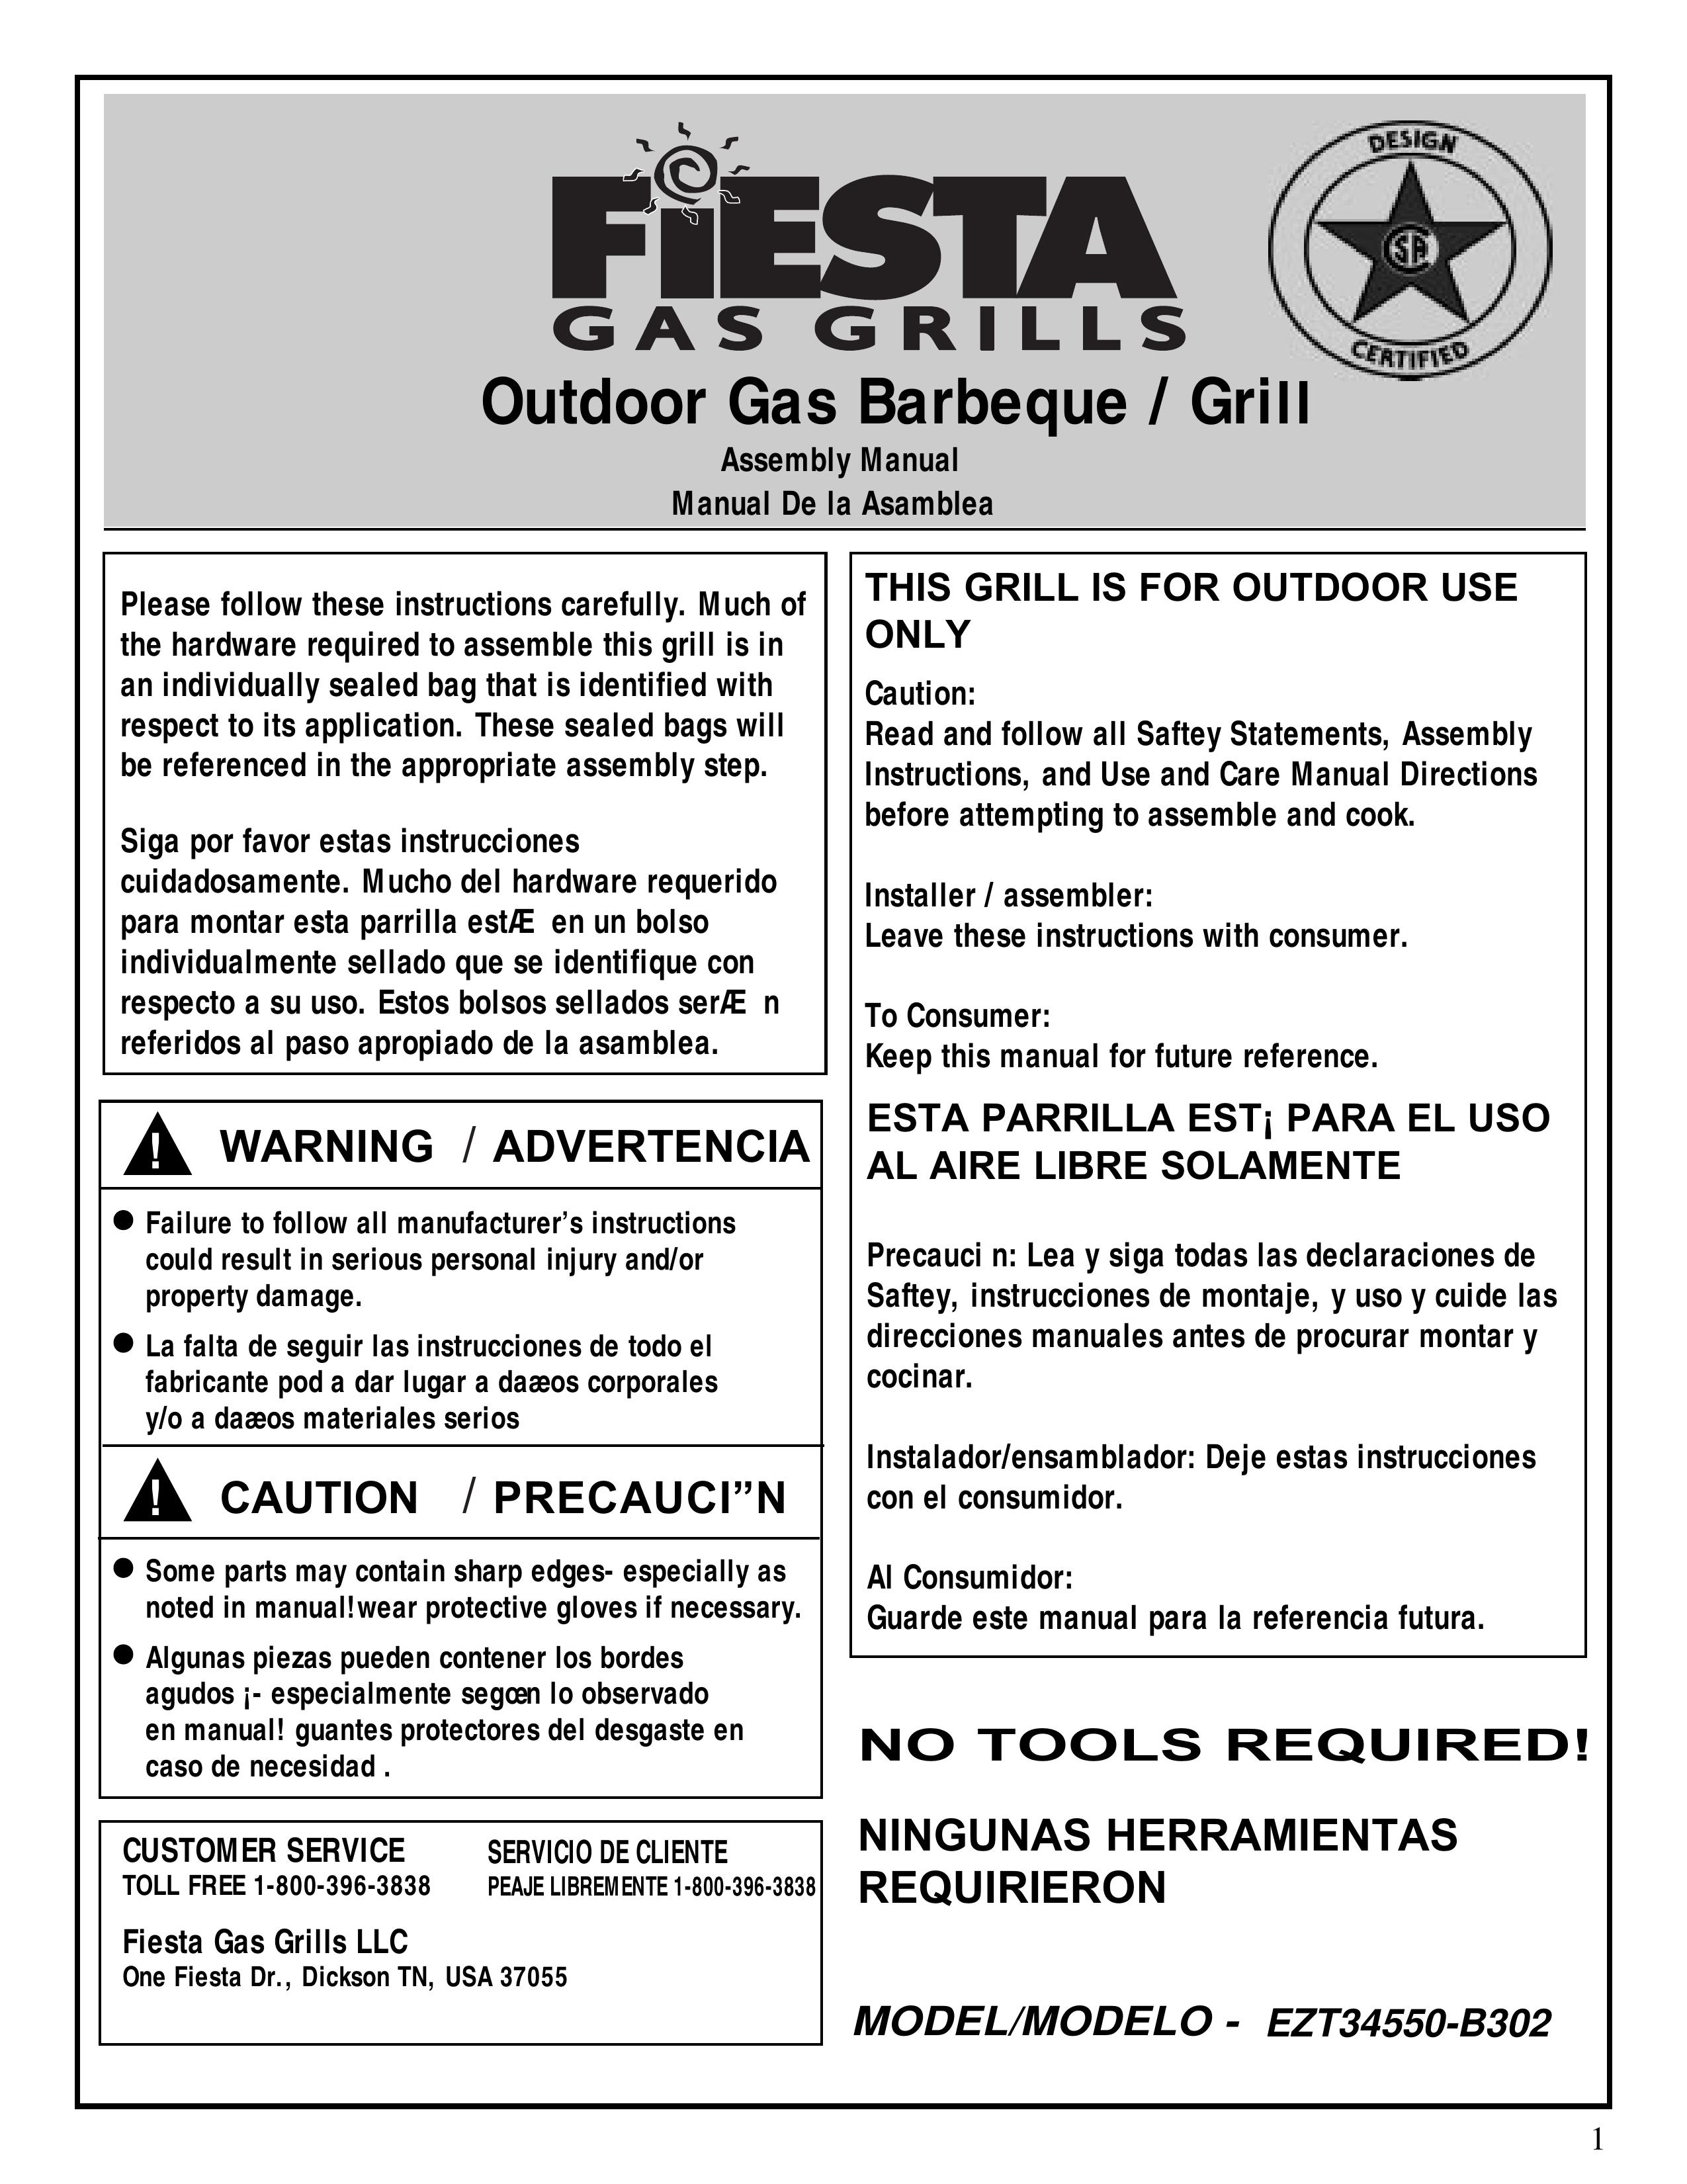 Fiesta EZT34550-B302 Gas Grill User Manual